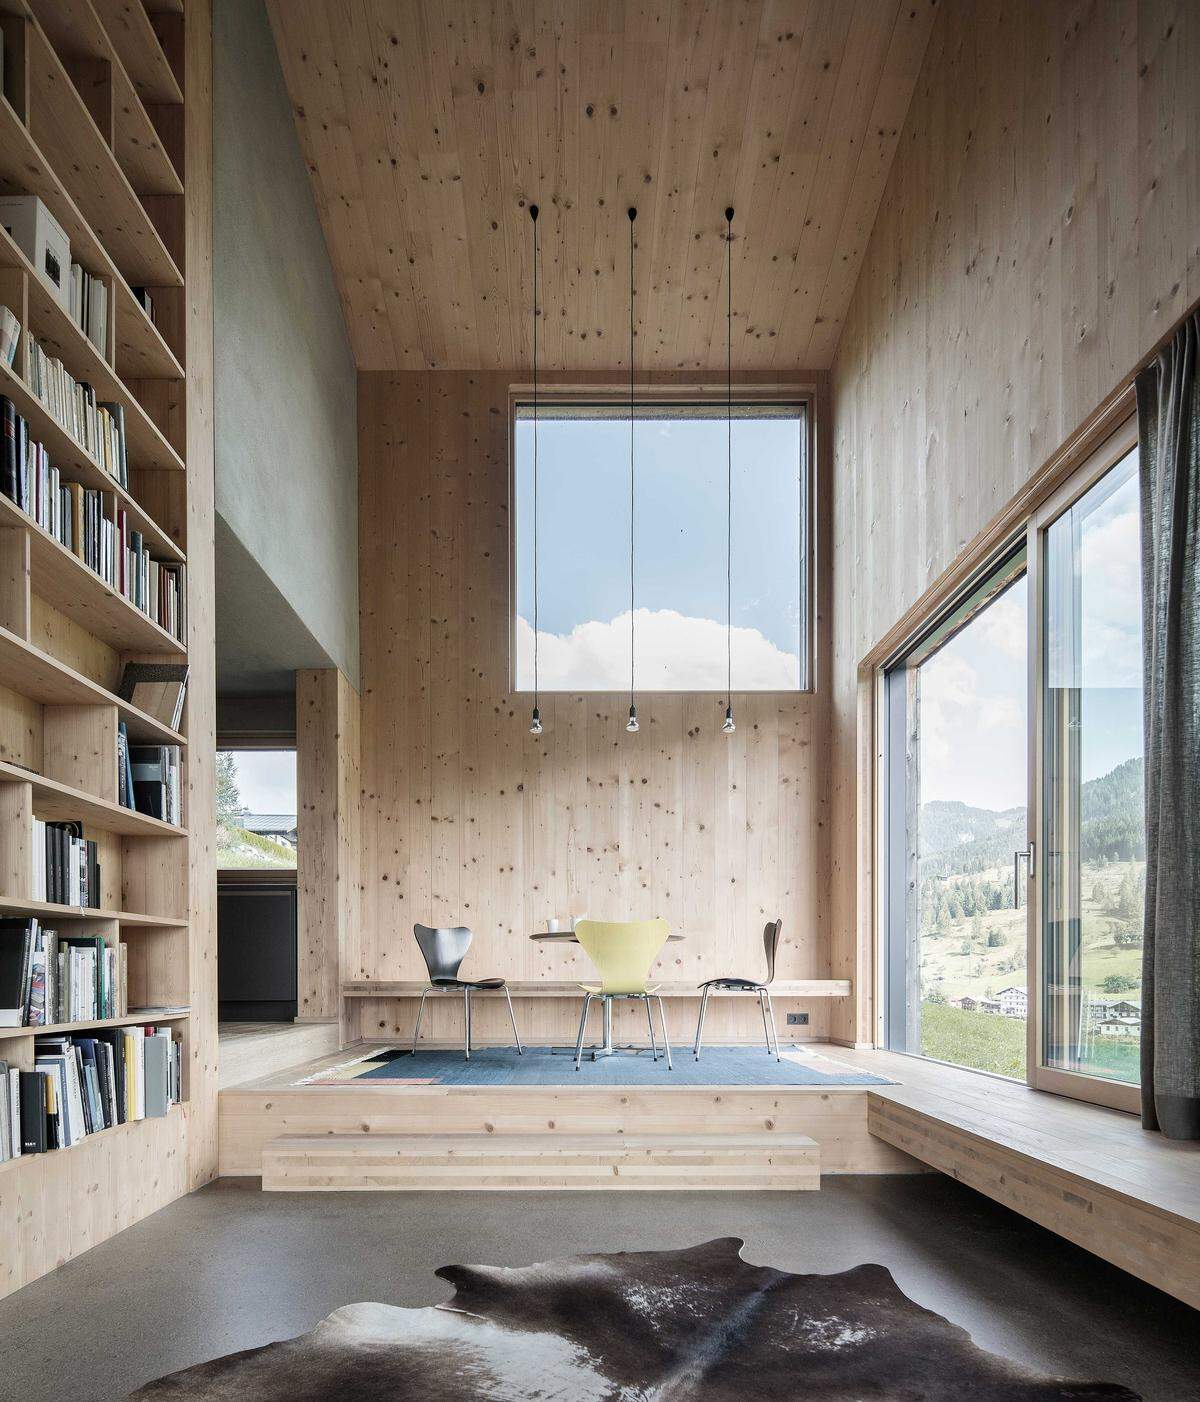 Außen schlichte Holzfassade, innen eine faszinierende Komposition aus Raum und Licht – so präsentiert sich das Haus von LP Architekten in Embach/Salzburg, das den zweiten Preis (nach einem Objekt in Husum) des Häuser-Awards 2018 gewonnen hat.  